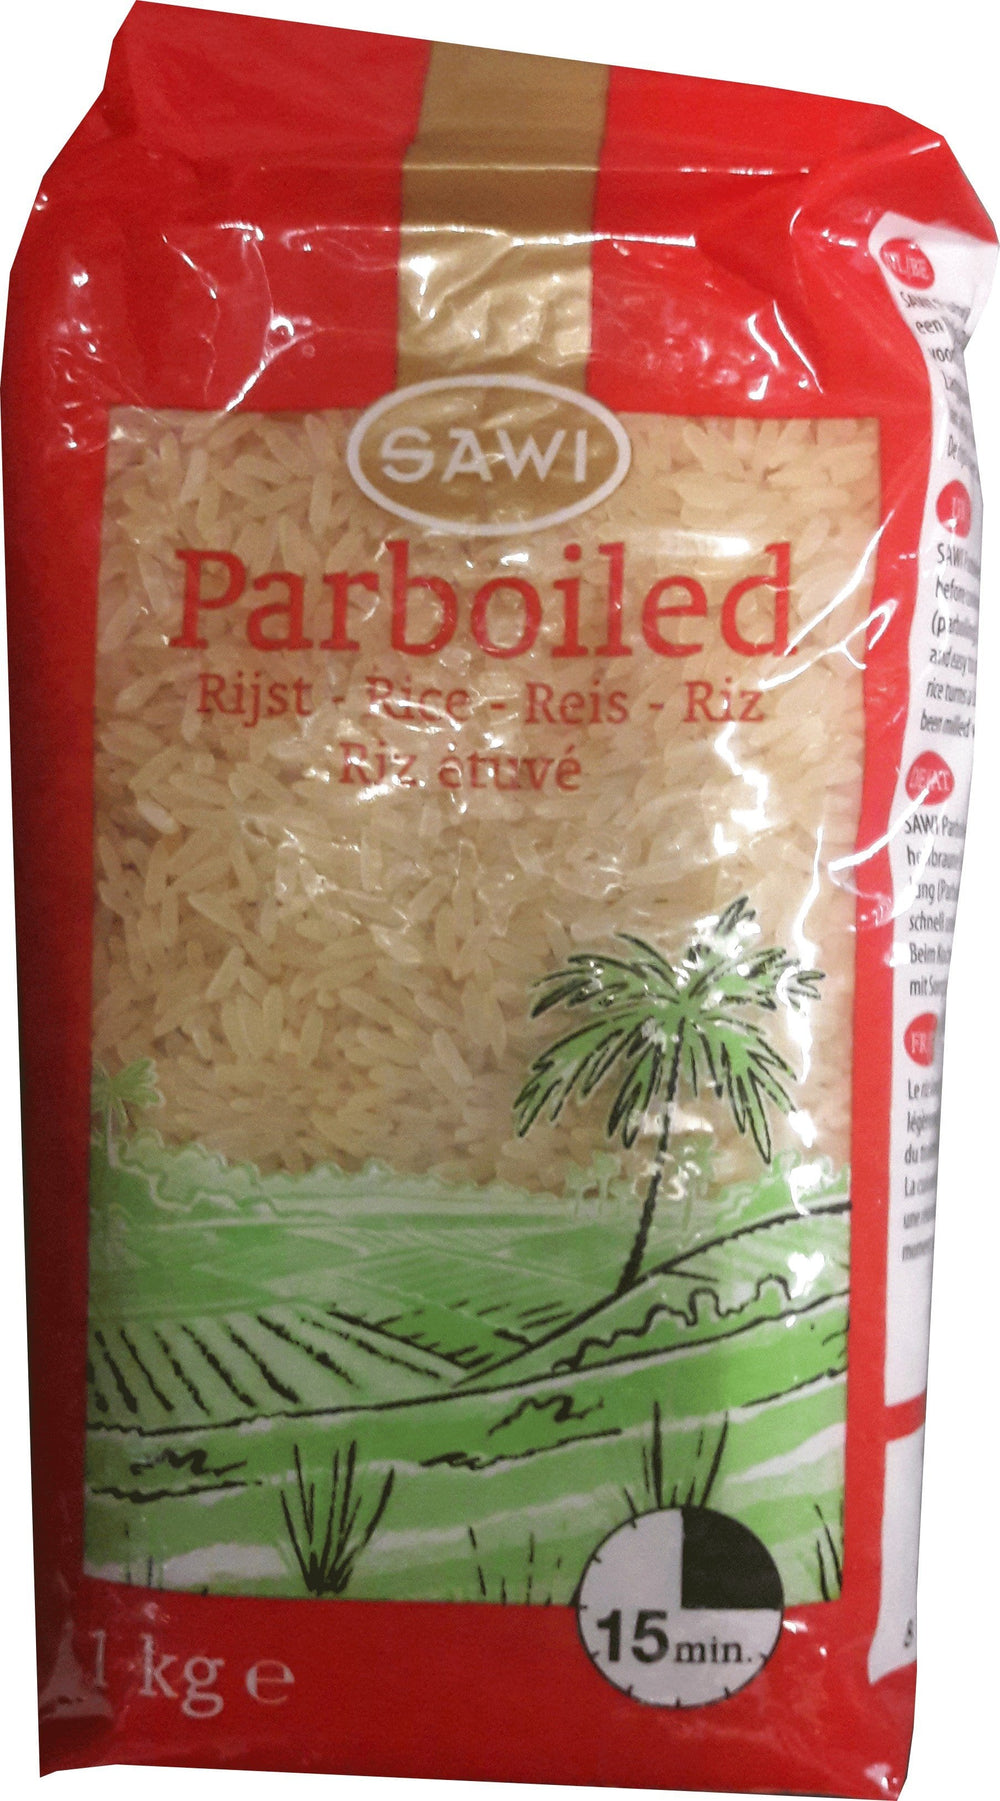 Sawi Parboiled Rijst 1kg